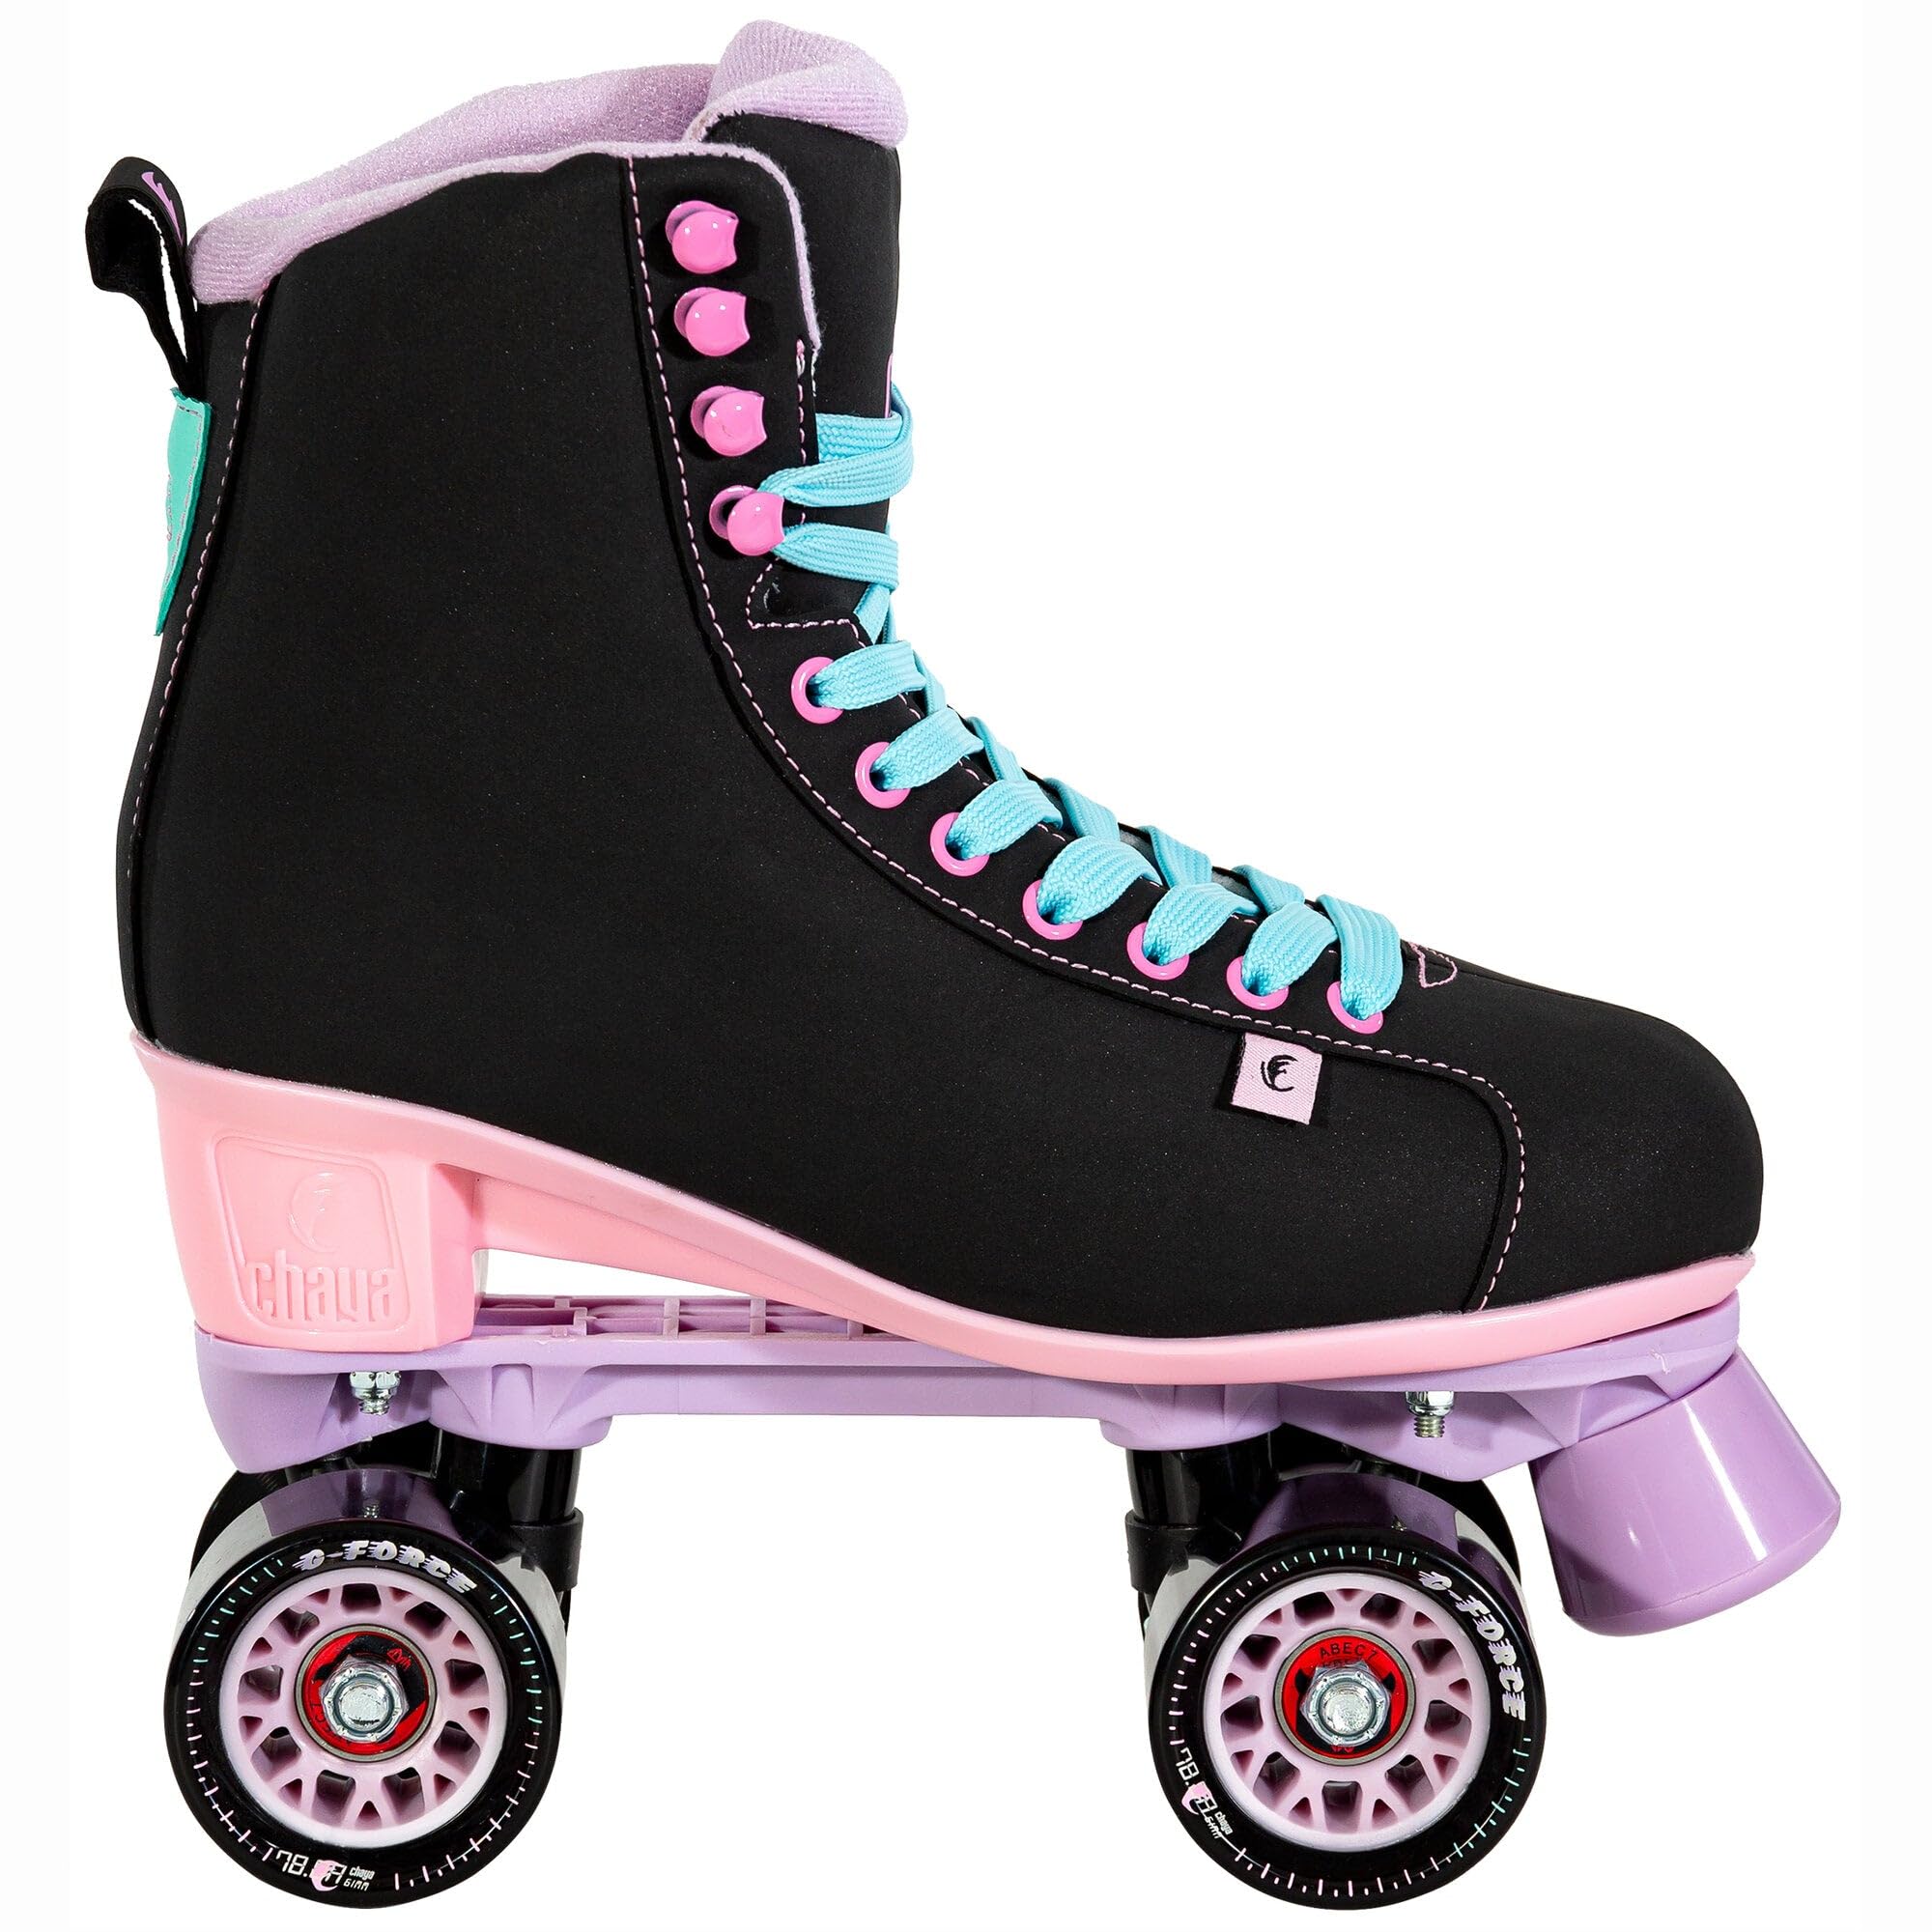 Chaya Roller Skates Melrose Black Pink für Damen in Schwarz/Lila, 61mm/78A Rollen, ABEC 7 Kugellager, Art. nr.: 810720